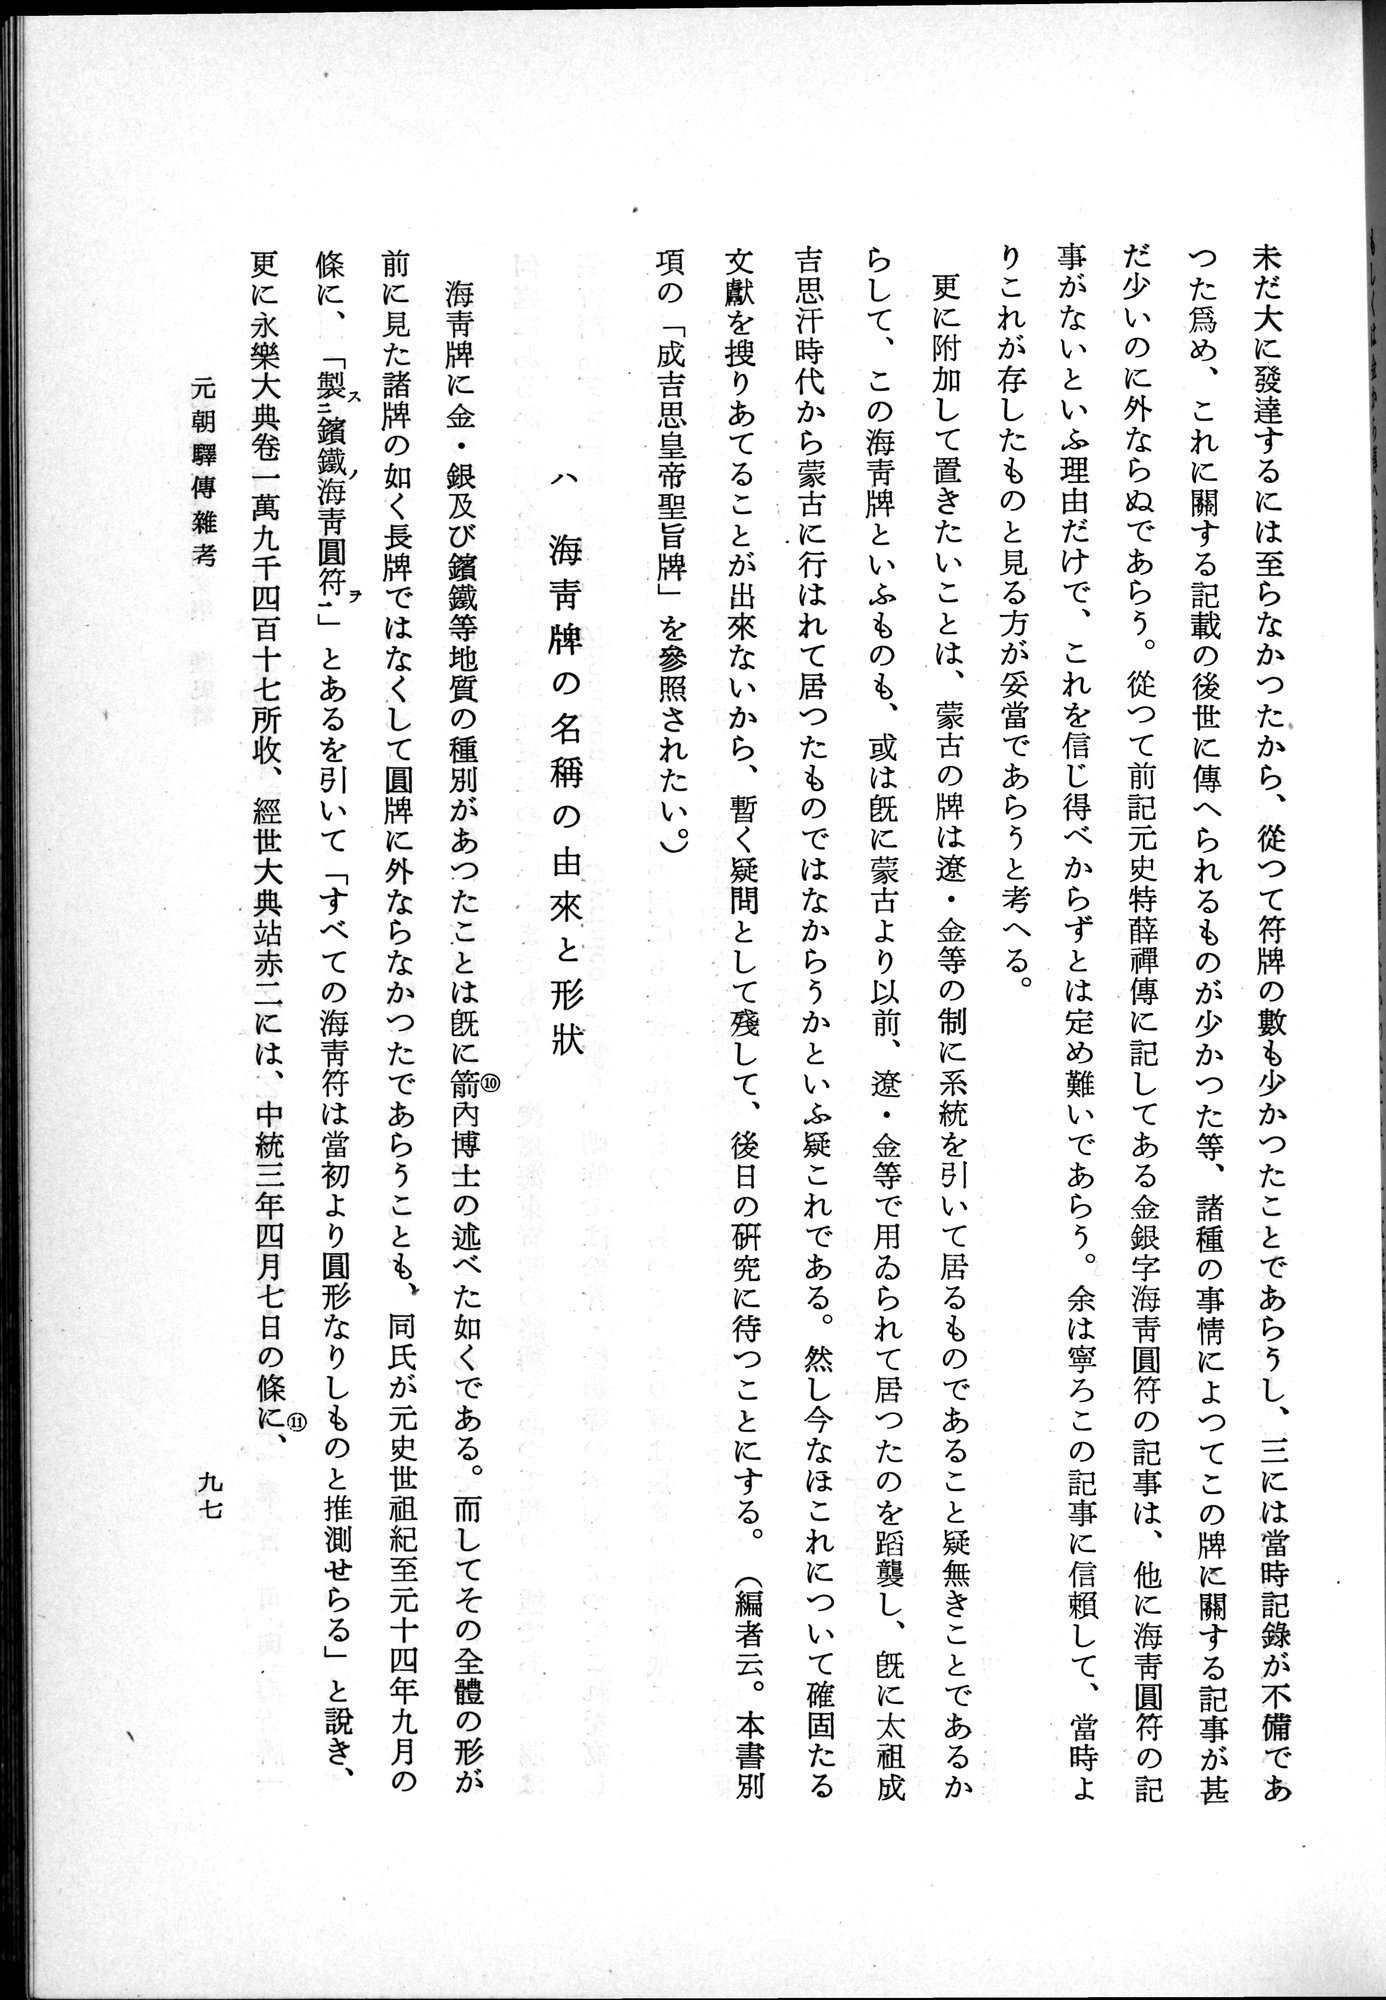 羽田博士史学論文集 : vol.1 / Page 135 (Grayscale High Resolution Image)